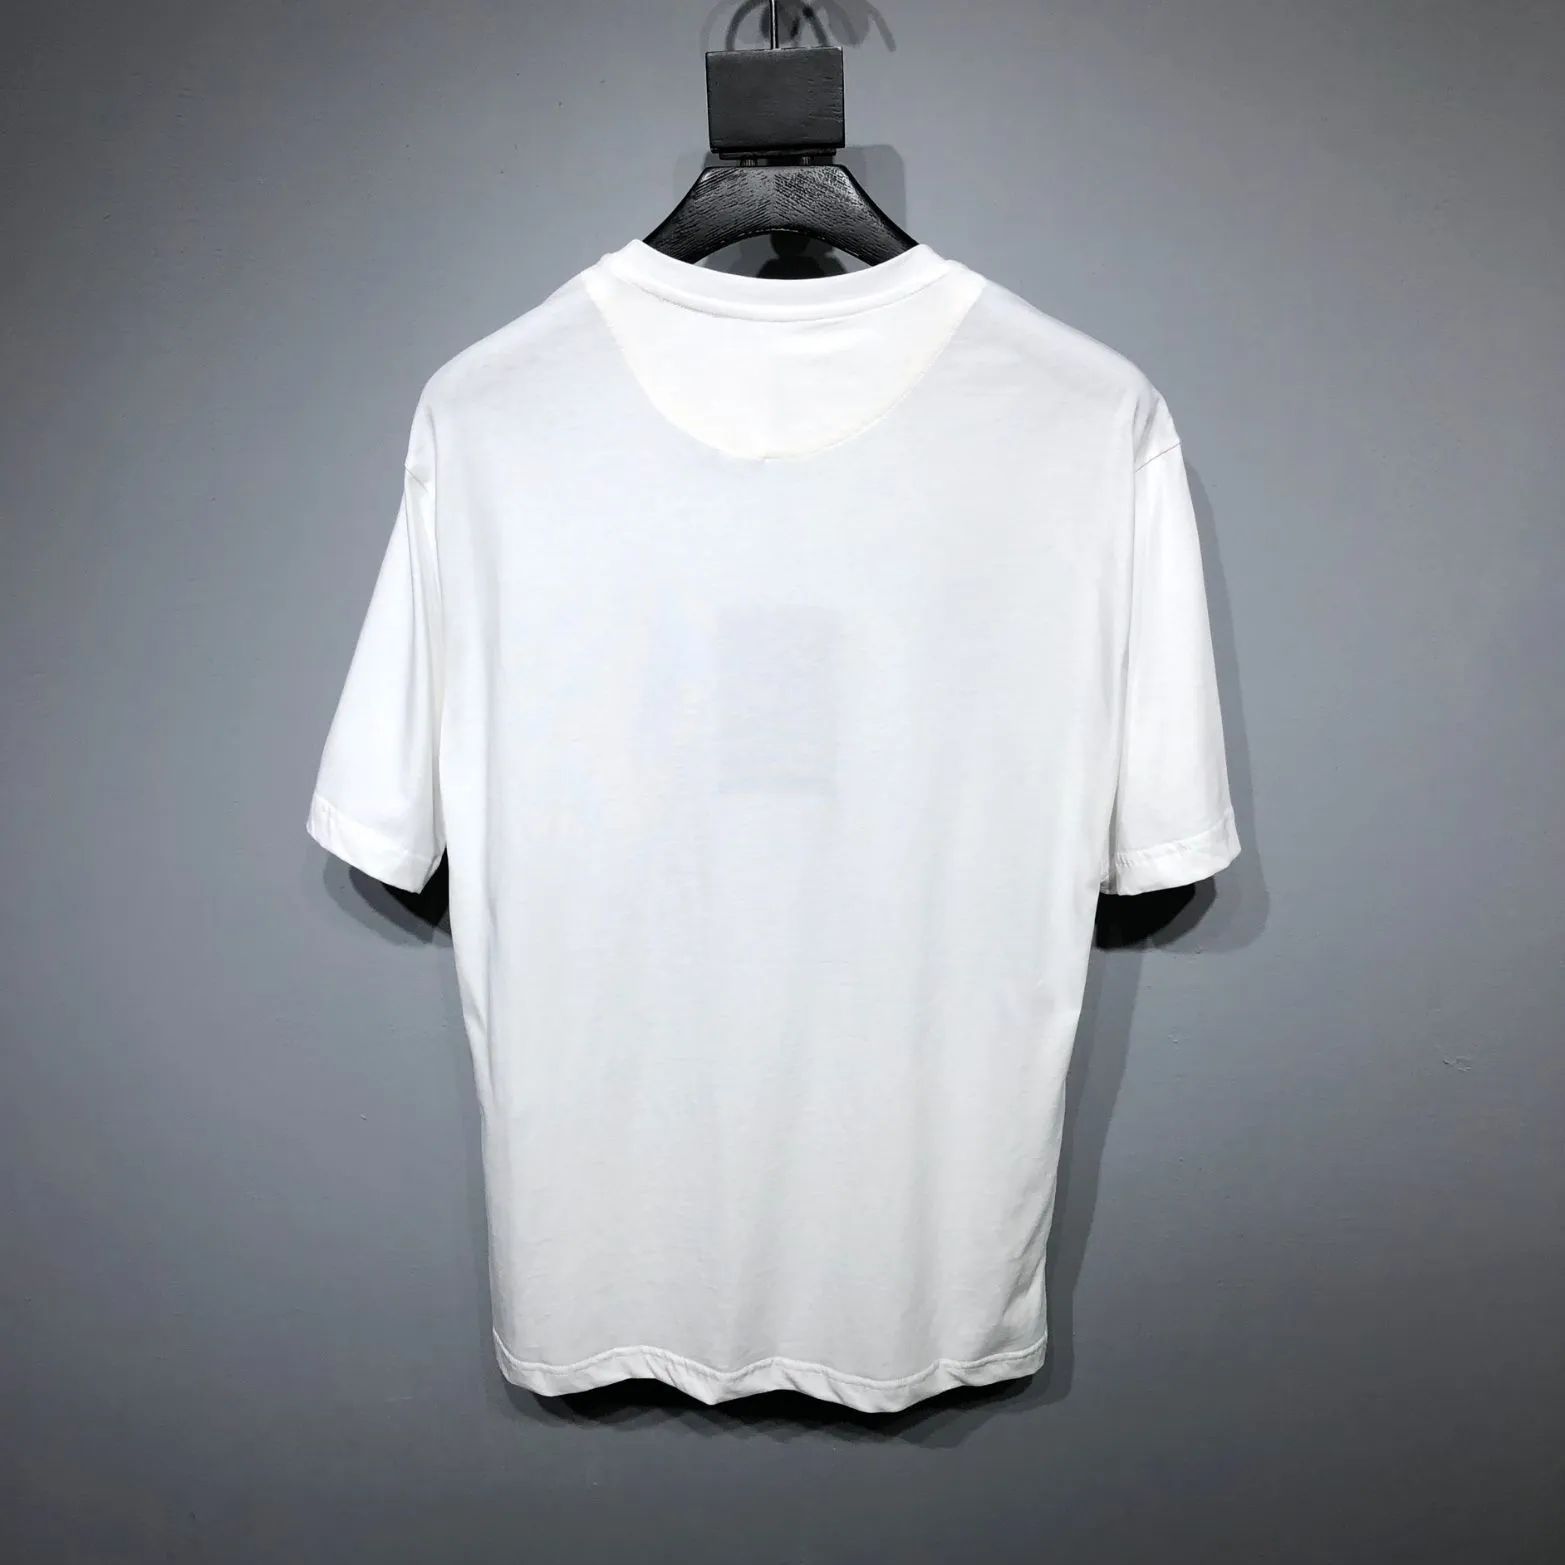 キャンペーン商品 Prada プラダ 三角ロゴ メンズ レディース 半袖Tシャツ ホワイト M - メルカリ